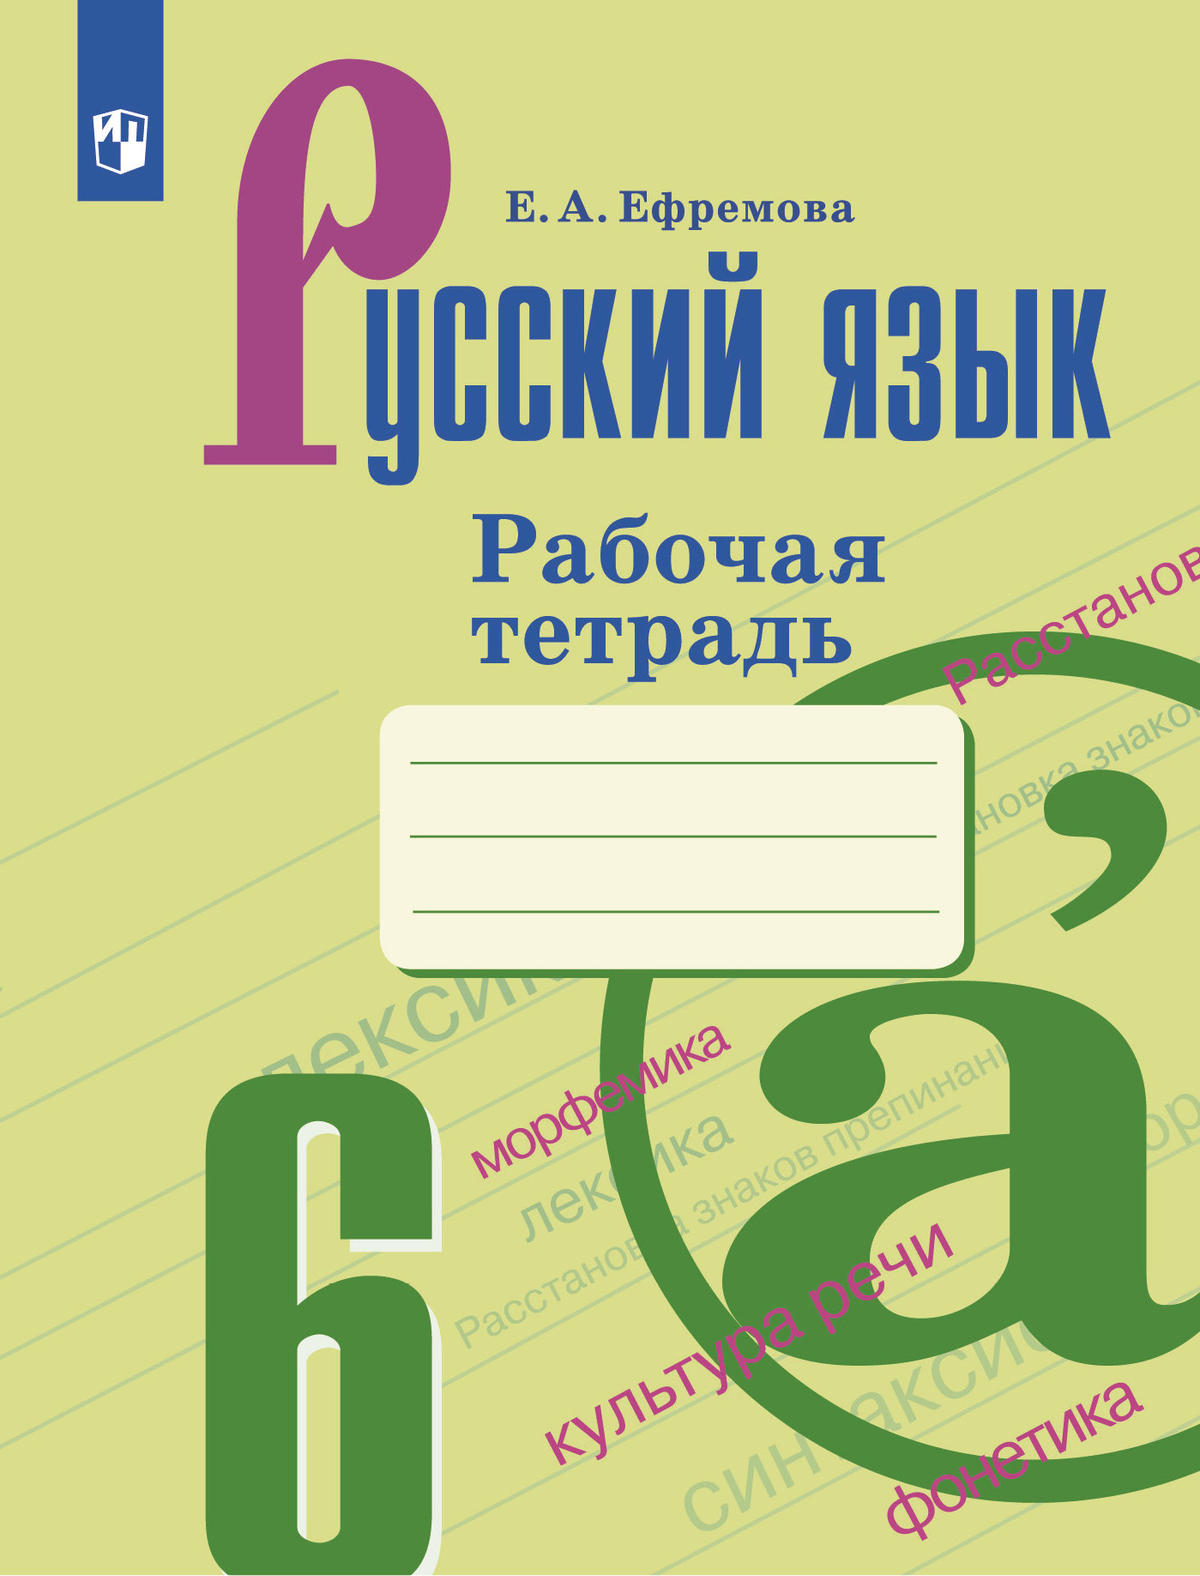 Русский язык. Рабочая тетрадь. 6 класс 1